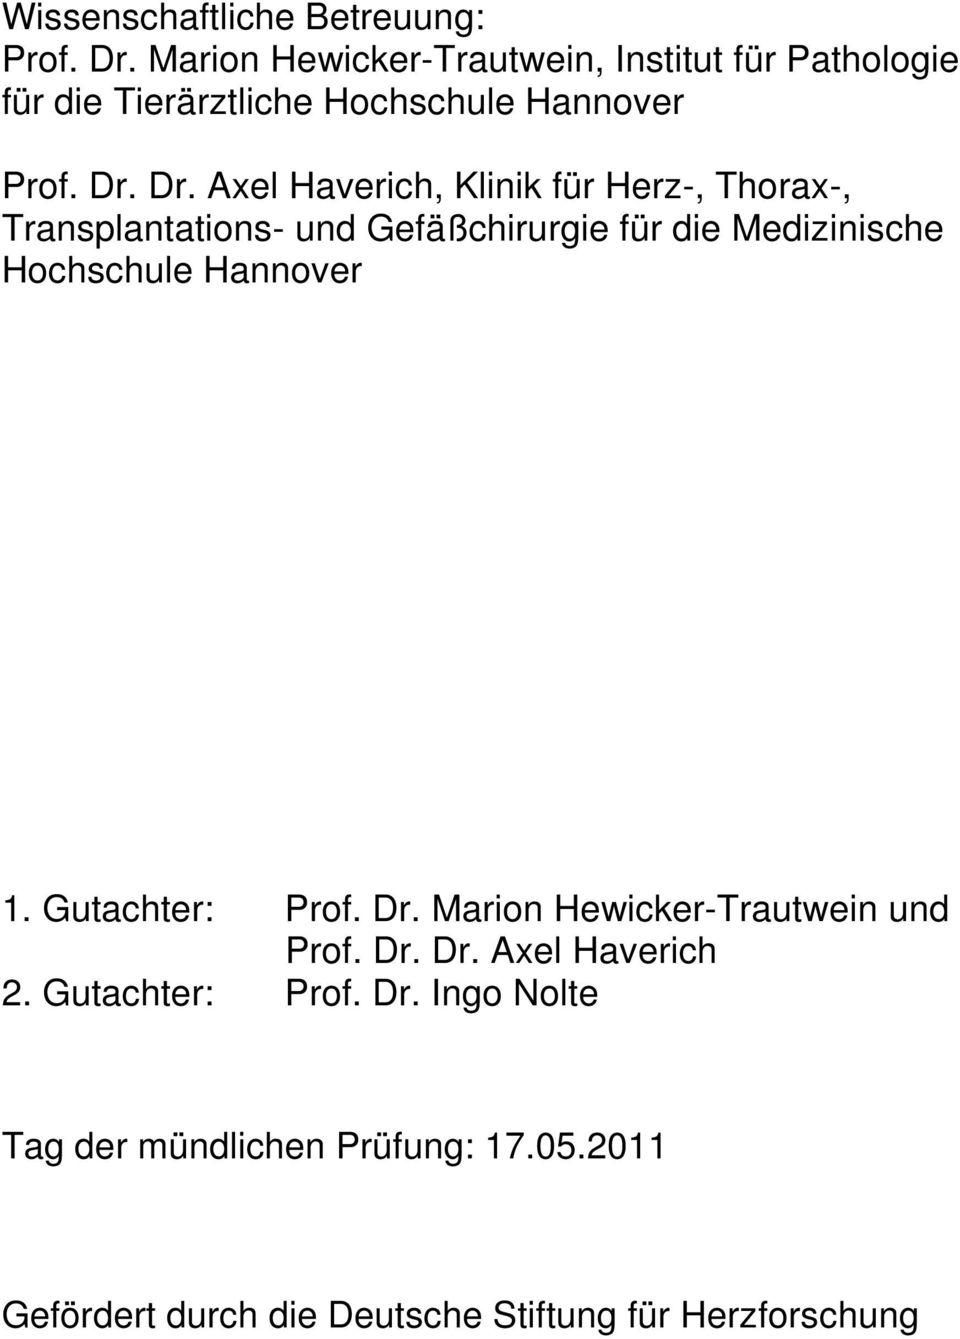 Dr. Axel Haverich, Klinik für Herz-, Thorax-, Transplantations- und Gefäßchirurgie für die Medizinische Hochschule